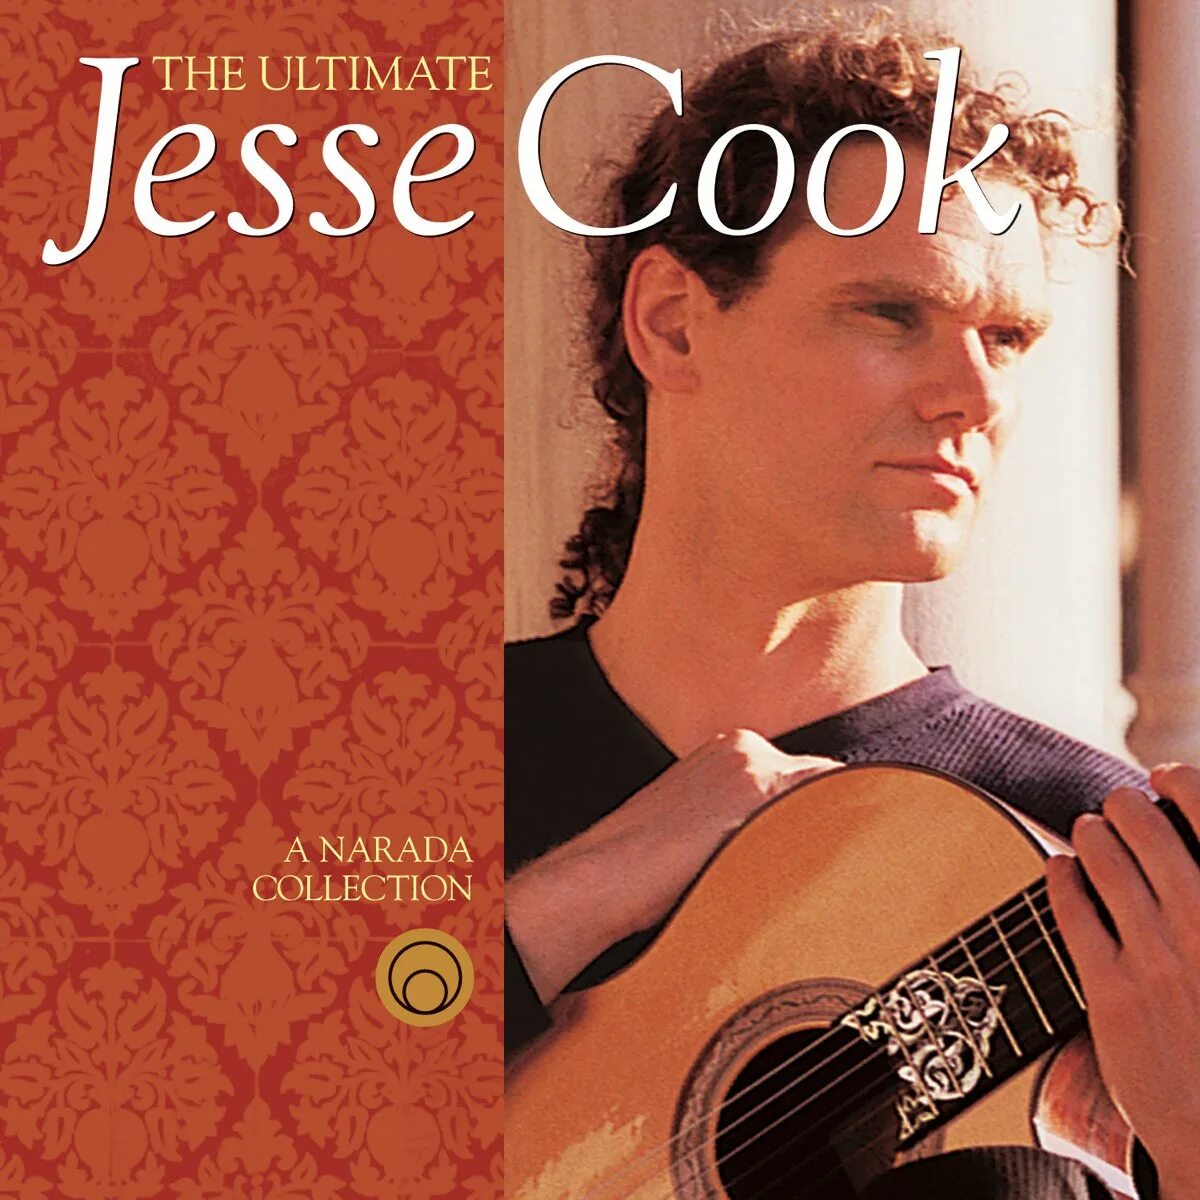 Tempest Jesse Cook. Jesse обложка. Jesse Cook Gravity. Jesse Cook guitarist. Jesse cook